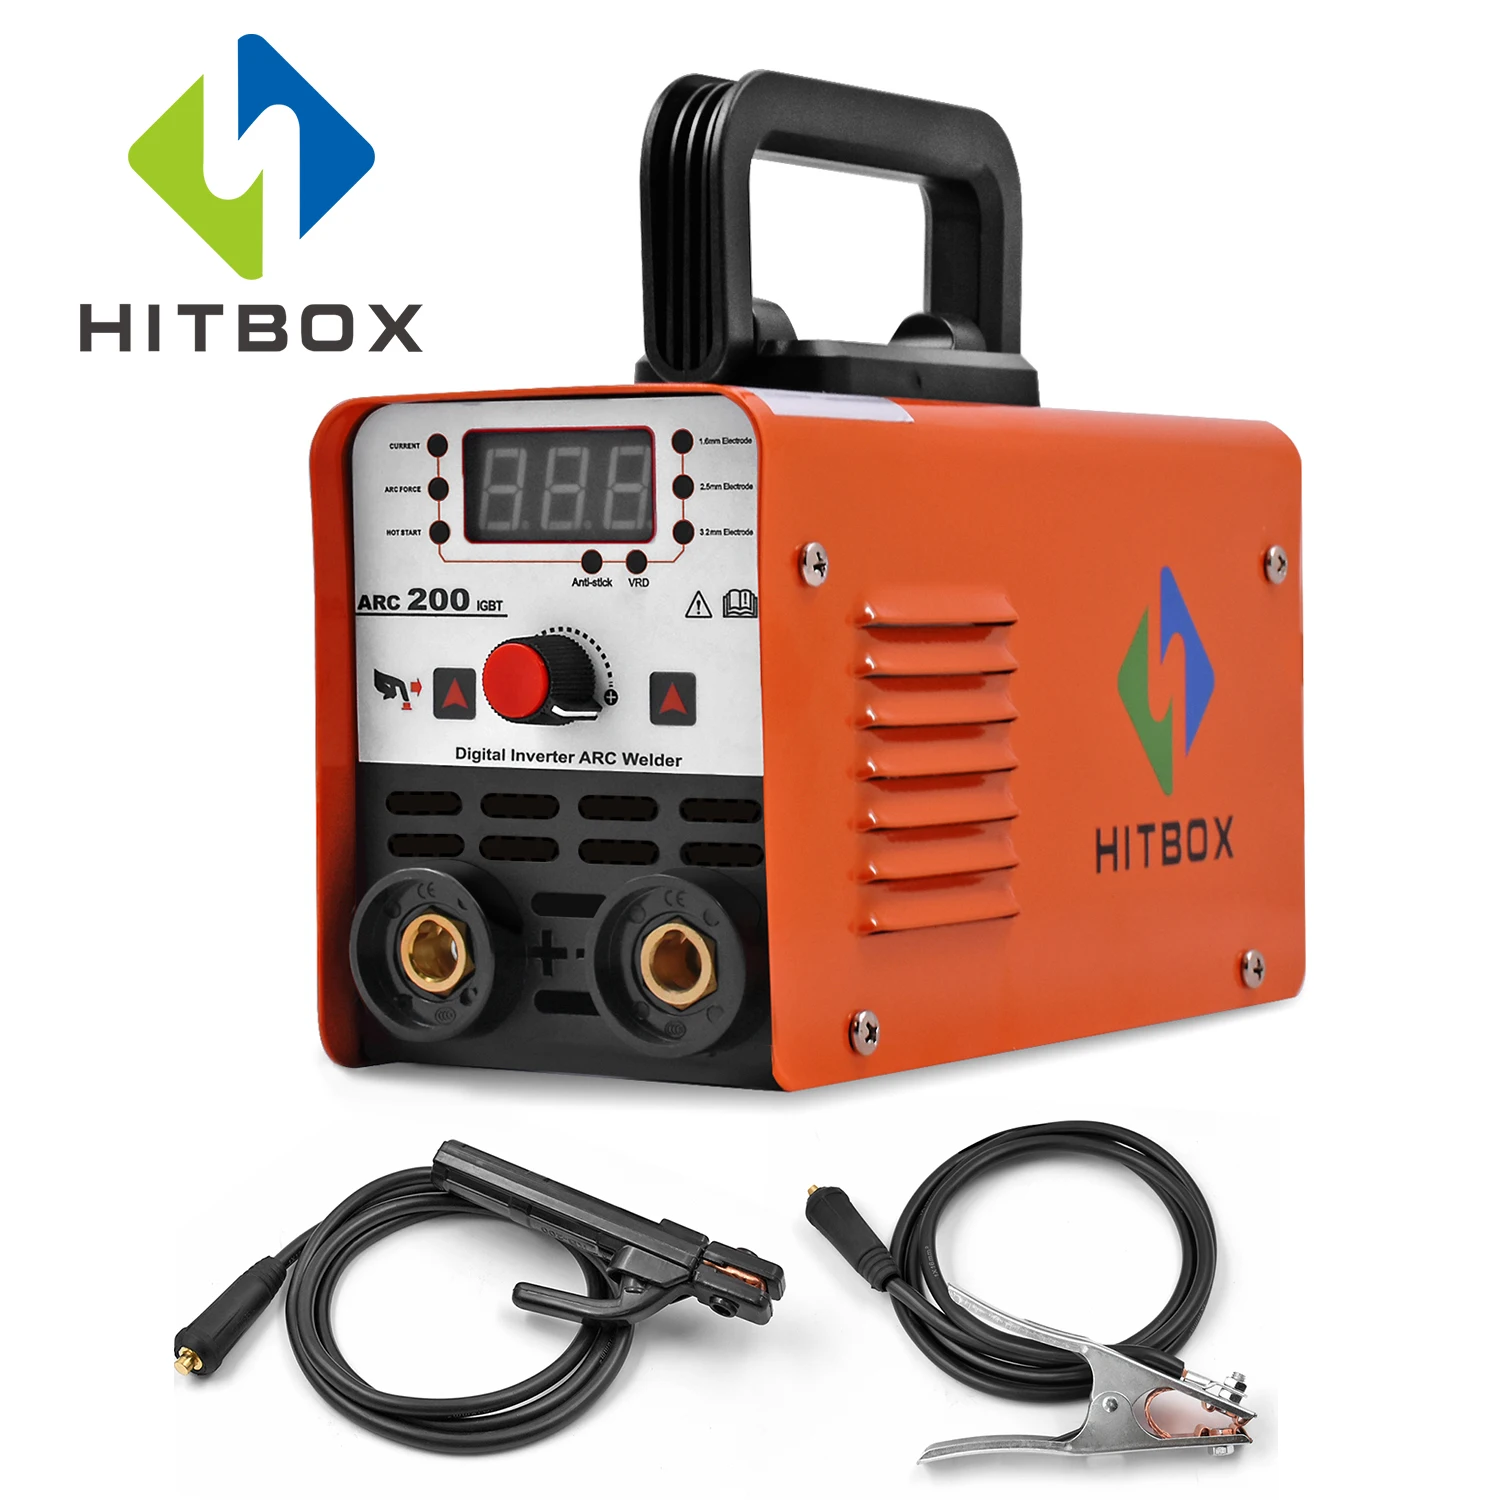 HITBOX дуговой сварочный аппарат MMA Stick Arc-200 смарт-контроль авто дуговой сварочный аппарат антипригарный 1,6-3,2 мм стержни 220 В VRD защита